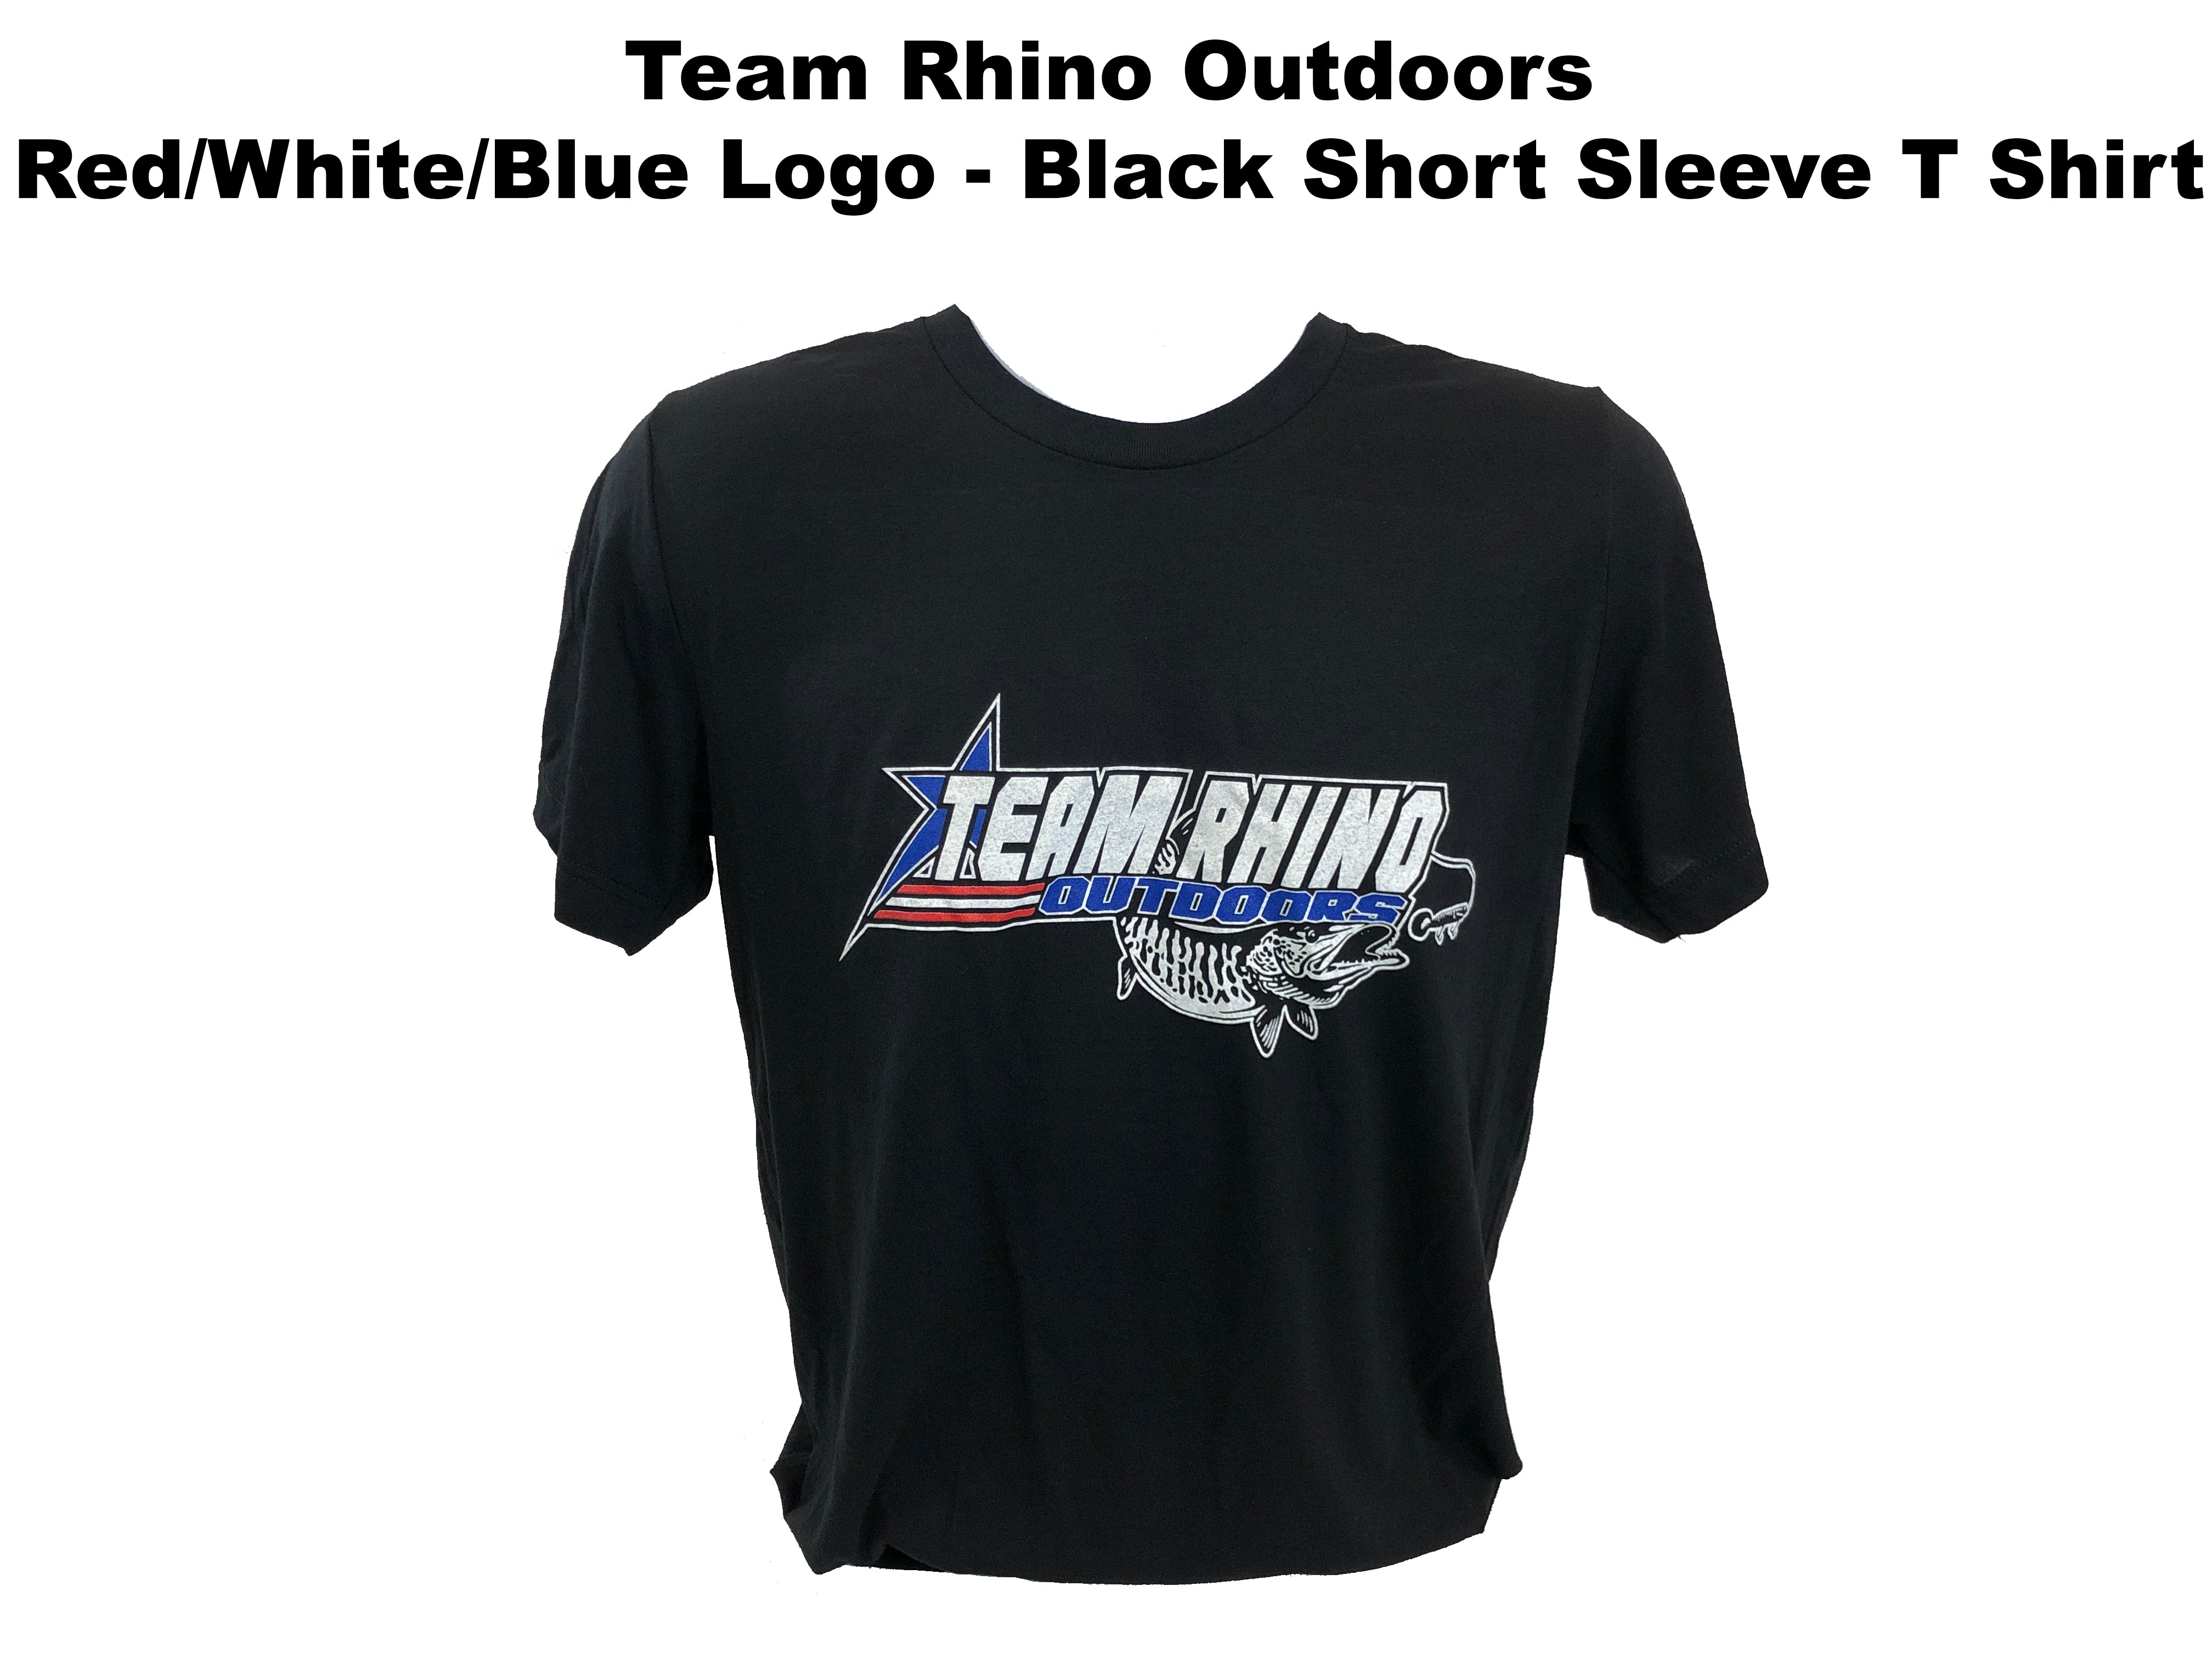 line – Team Rhino Outdoors LLC